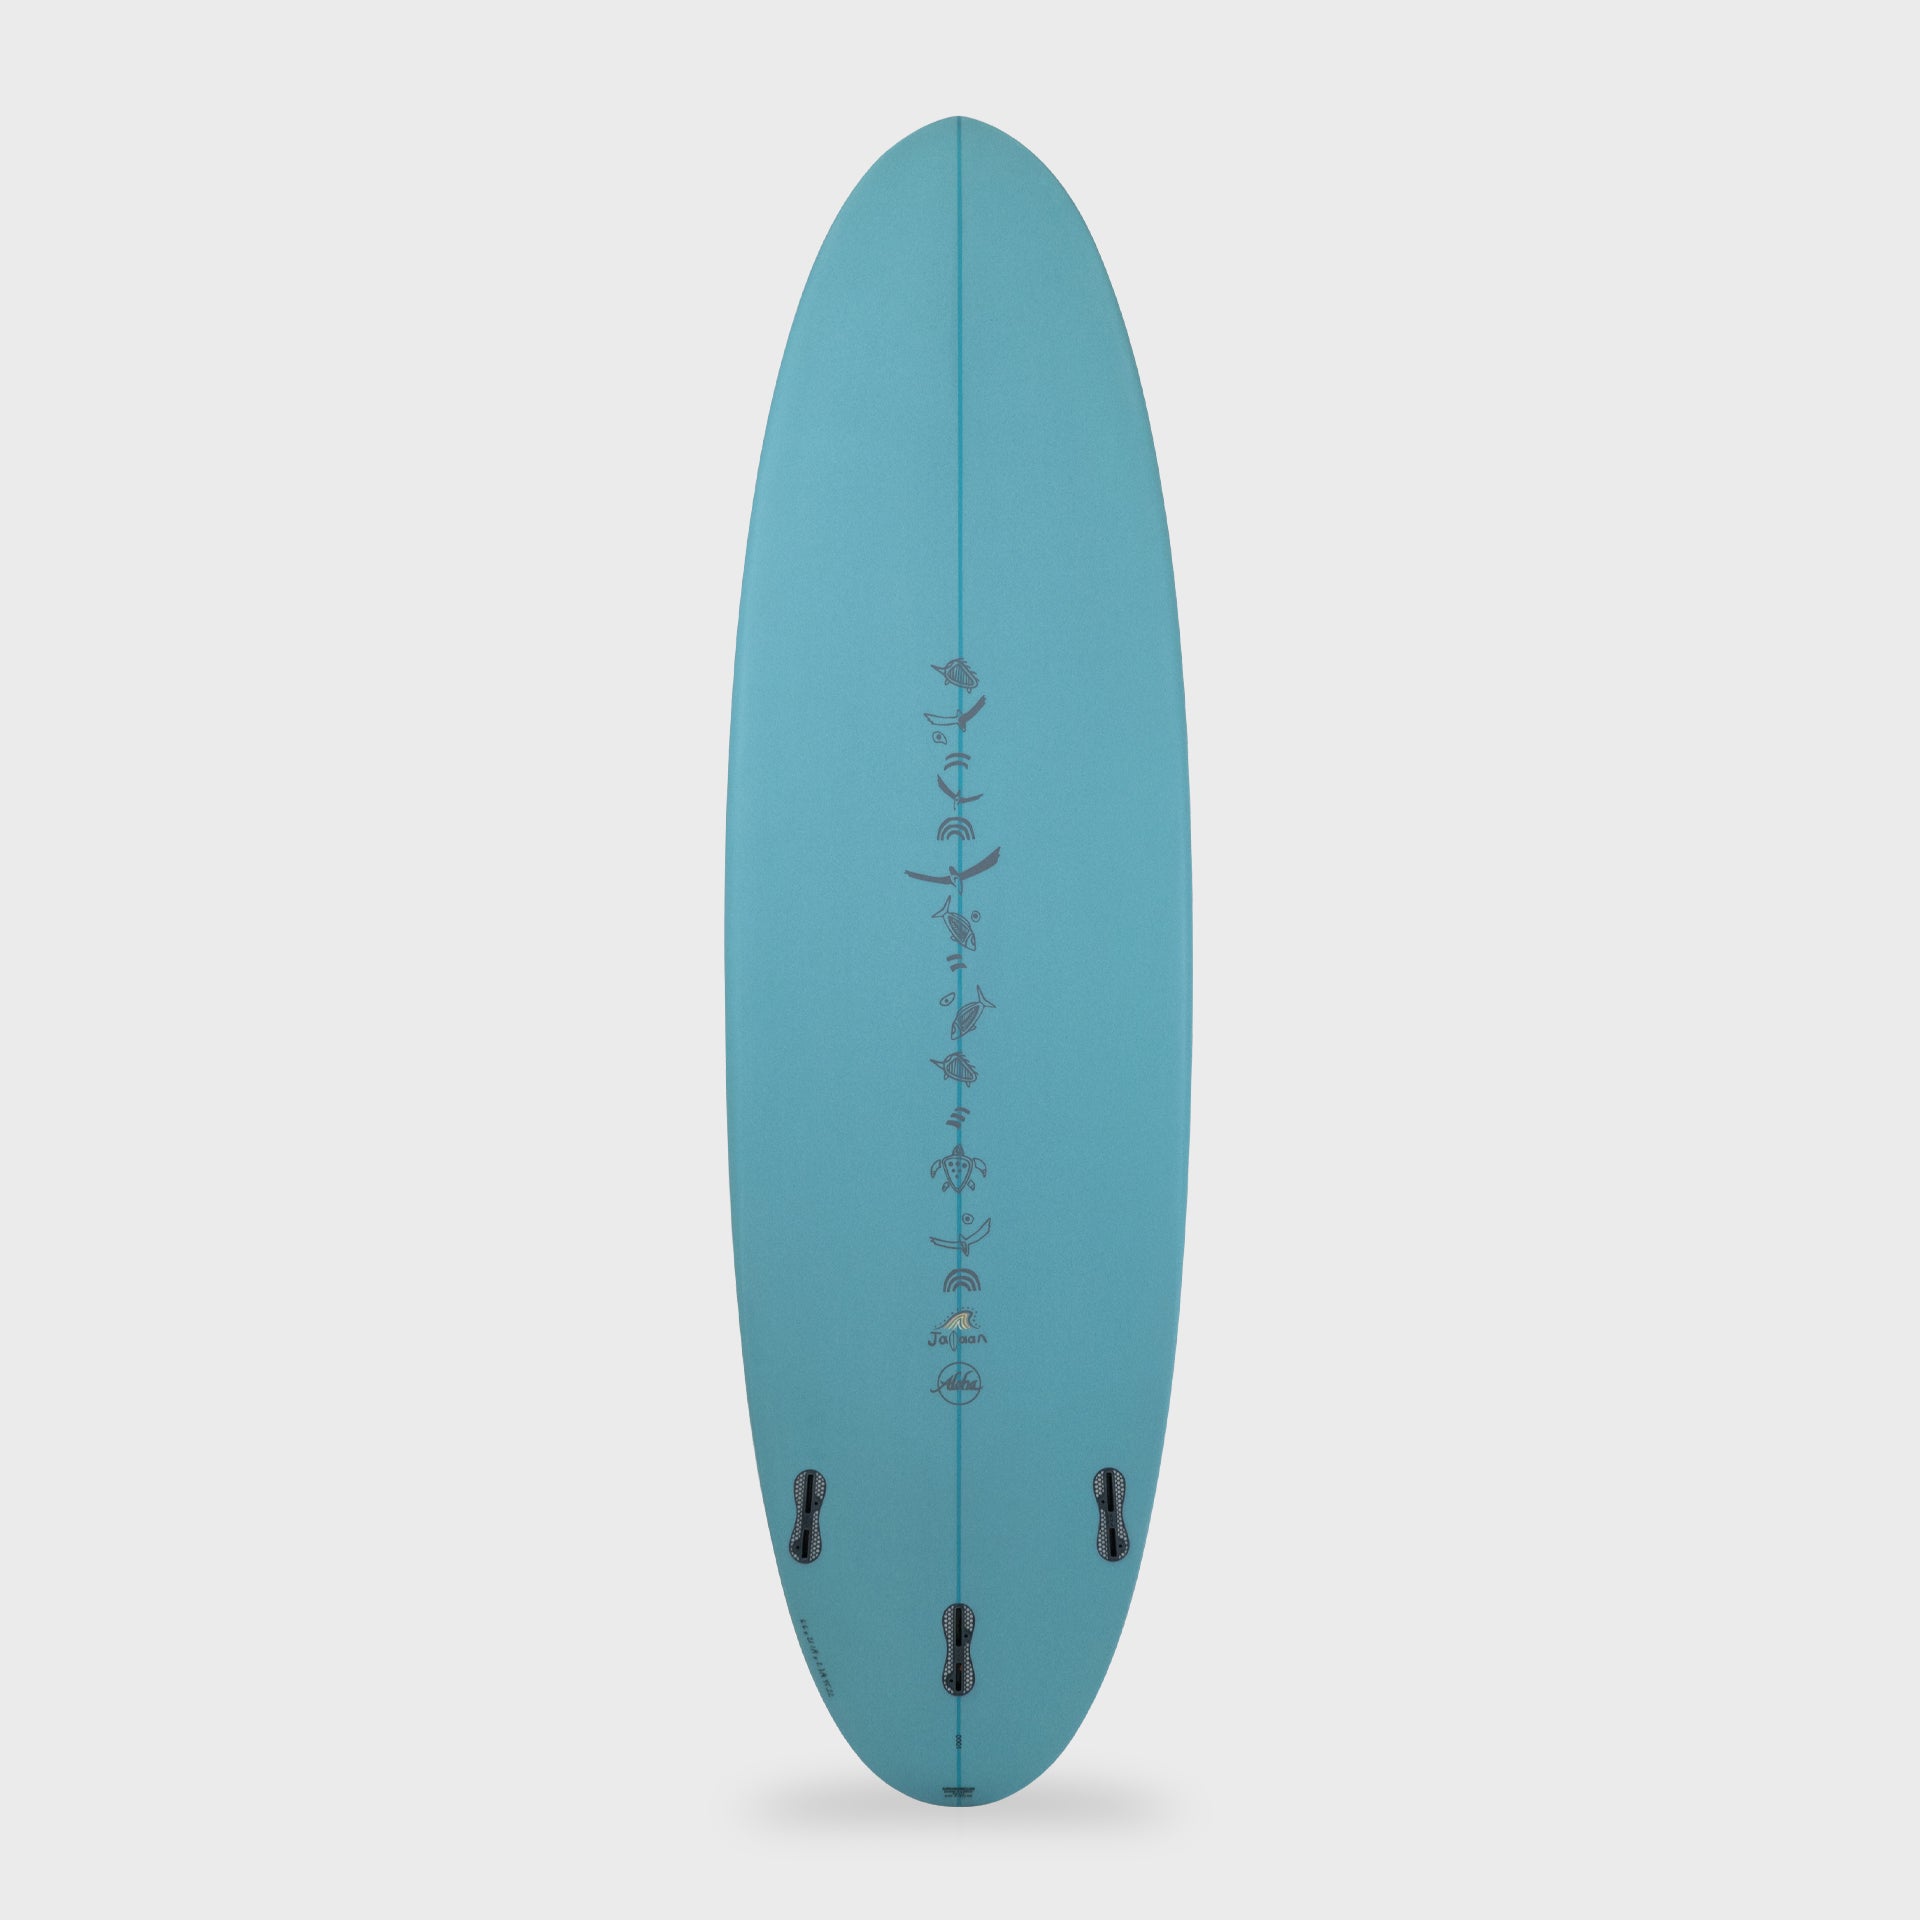 7'0 Jalaan Peanut PU Mid Length - Aqua - FCS II - ManGo Surfing